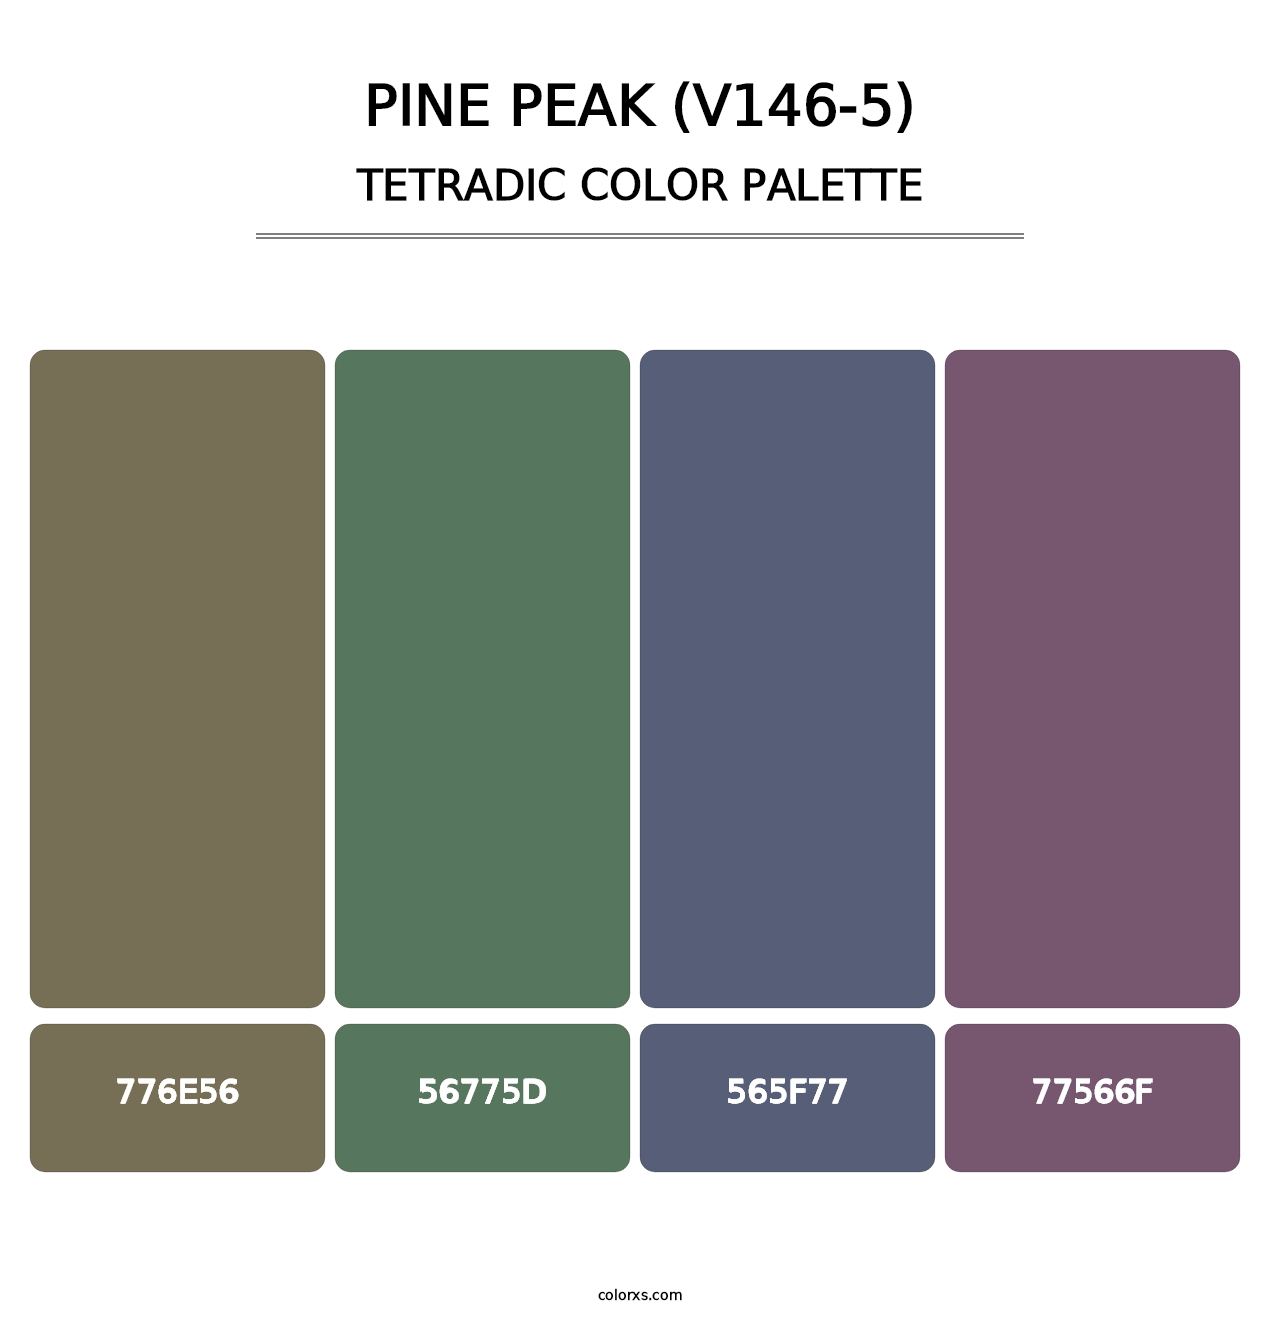 Pine Peak (V146-5) - Tetradic Color Palette